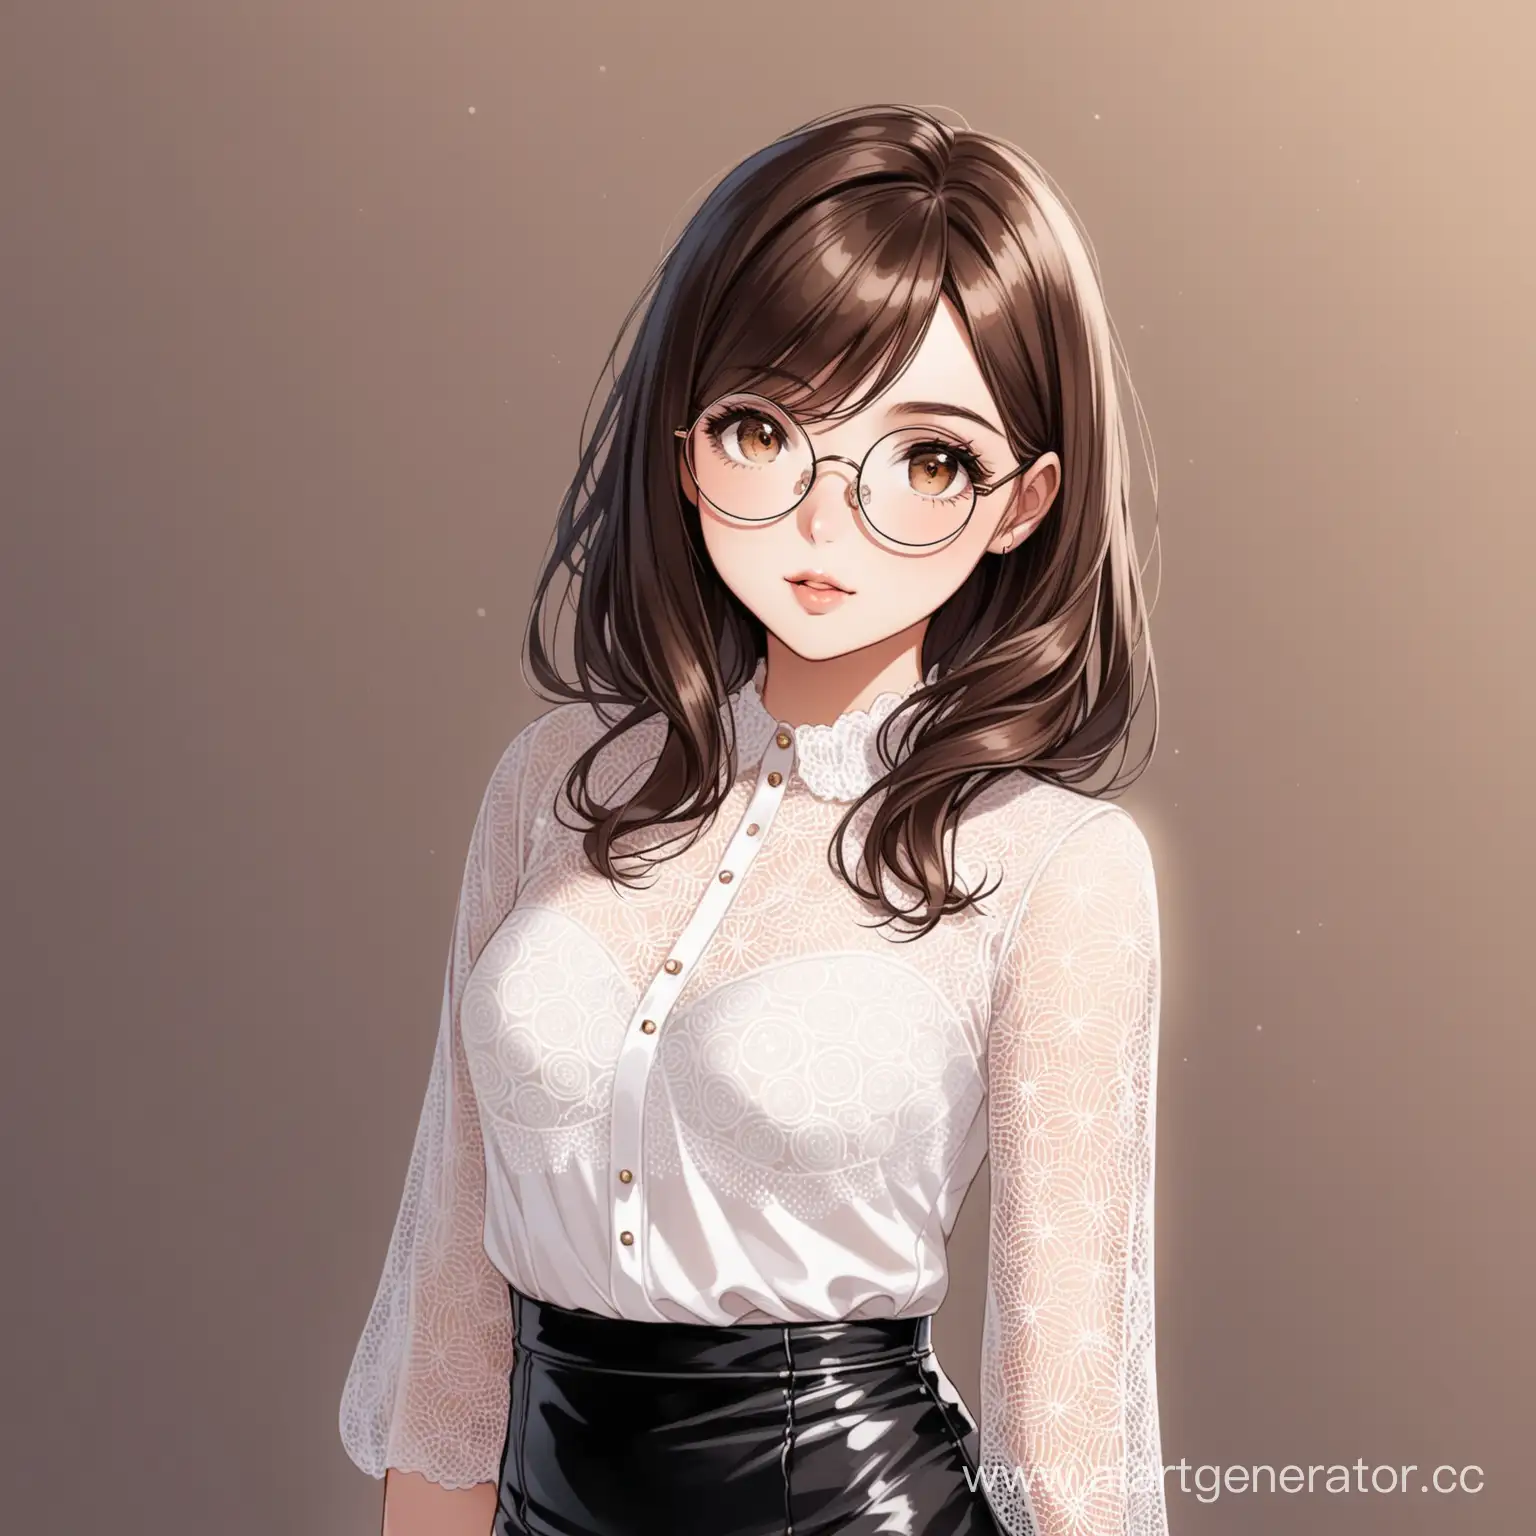 Кареглазая девушка шатенка в круглых очках в кружевной белой блузке и черной кожаной юбке